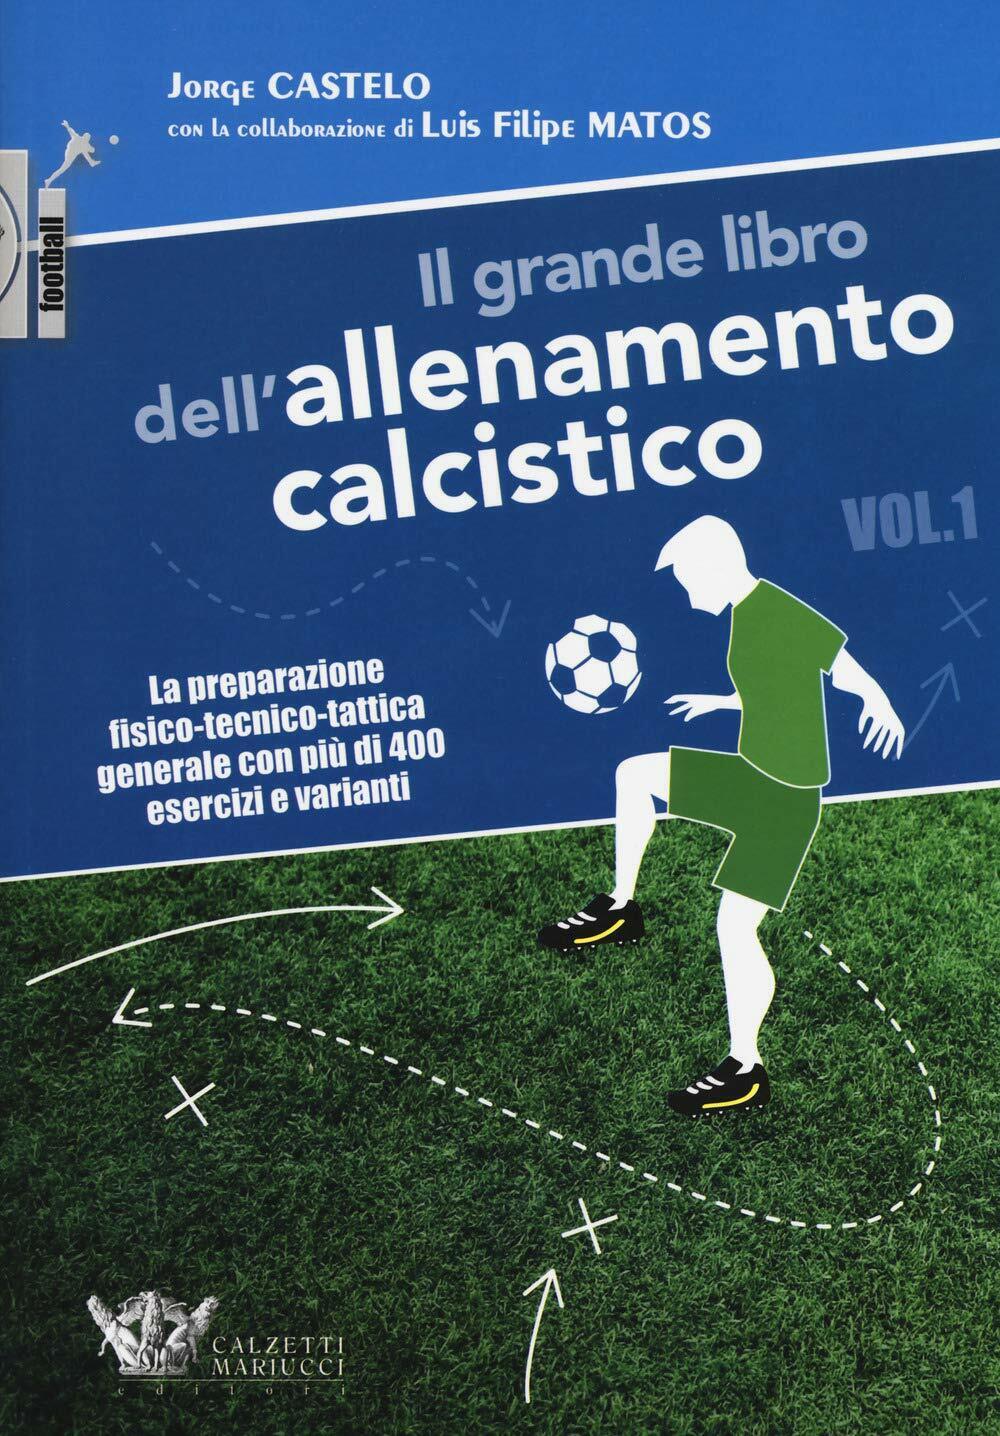 Il grande libro dell'allenamento calcistico. Vol.1 - Jorge Castelo, Matos libro usato